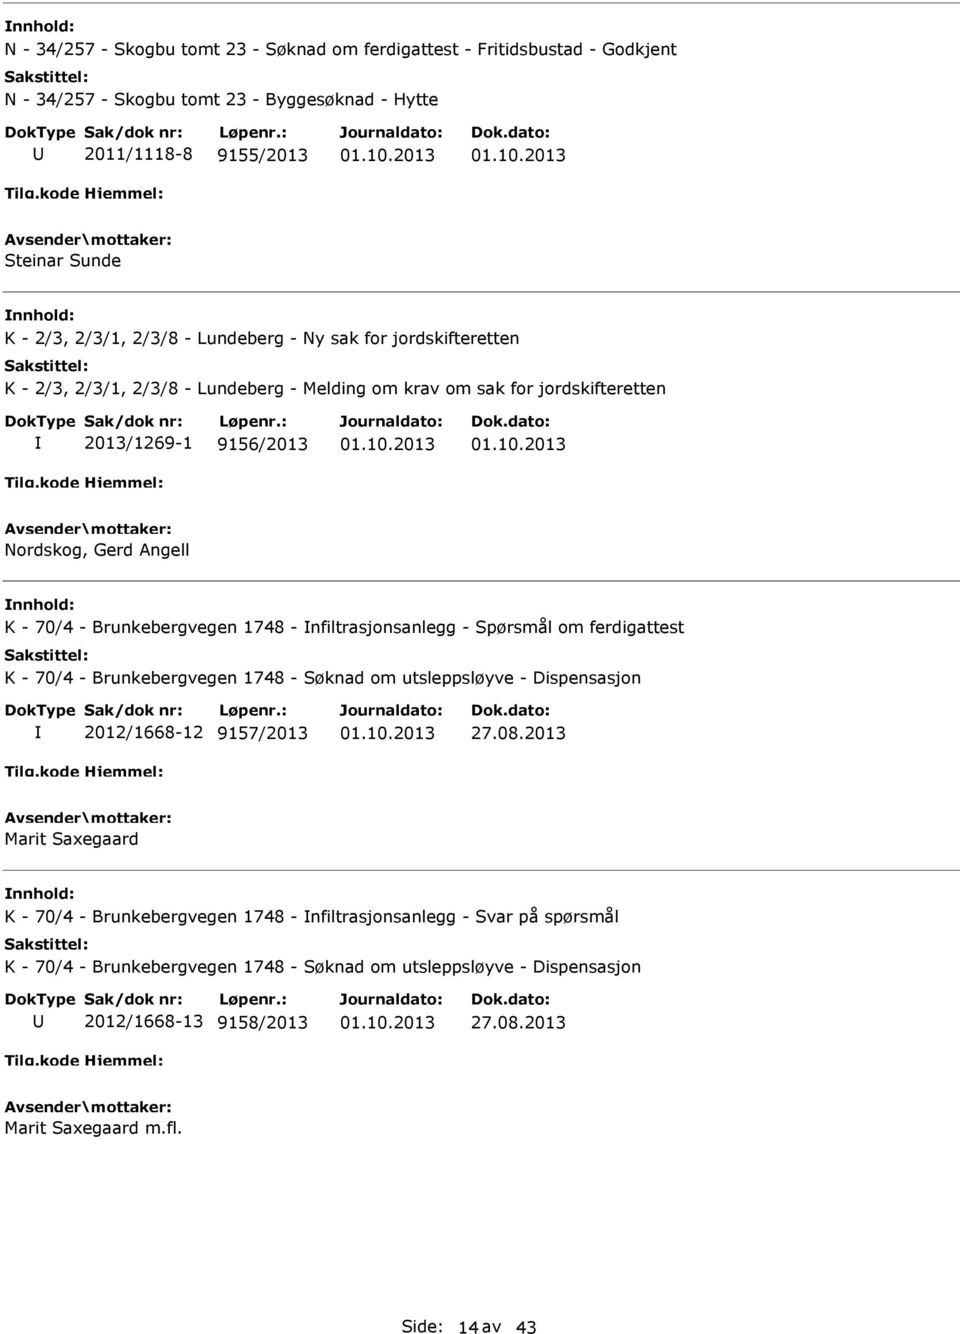 1748 - nfiltrasjonsanlegg - Spørsmål om ferdigattest K - 70/4 - Brunkebergvegen 1748 - Søknad om utsleppsløyve - Dispensasjon 2012/1668-12 9157/2013 27.08.